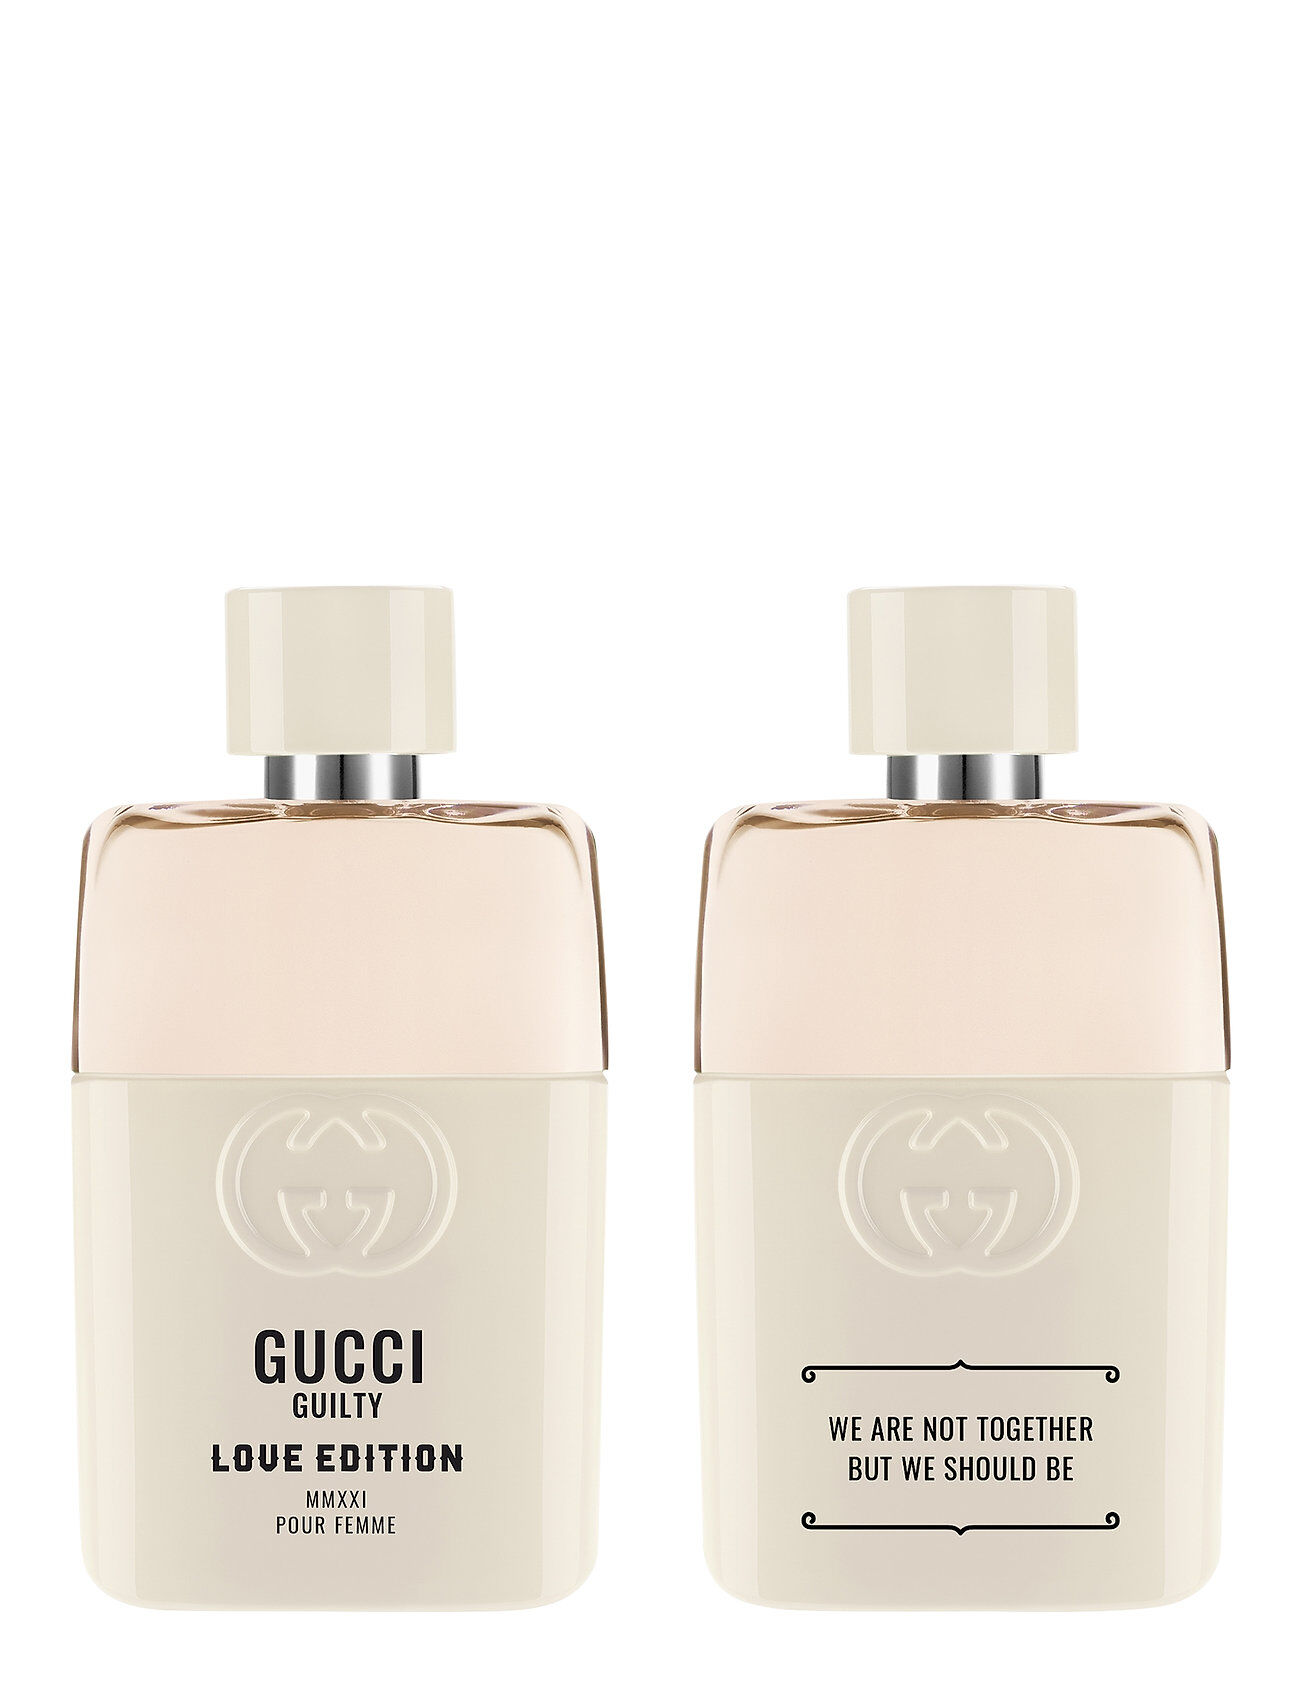 Gucci Guilty Pf Love Edition Mmxxieau De Parfum Parfyme Eau De Parfum Nude Gucci